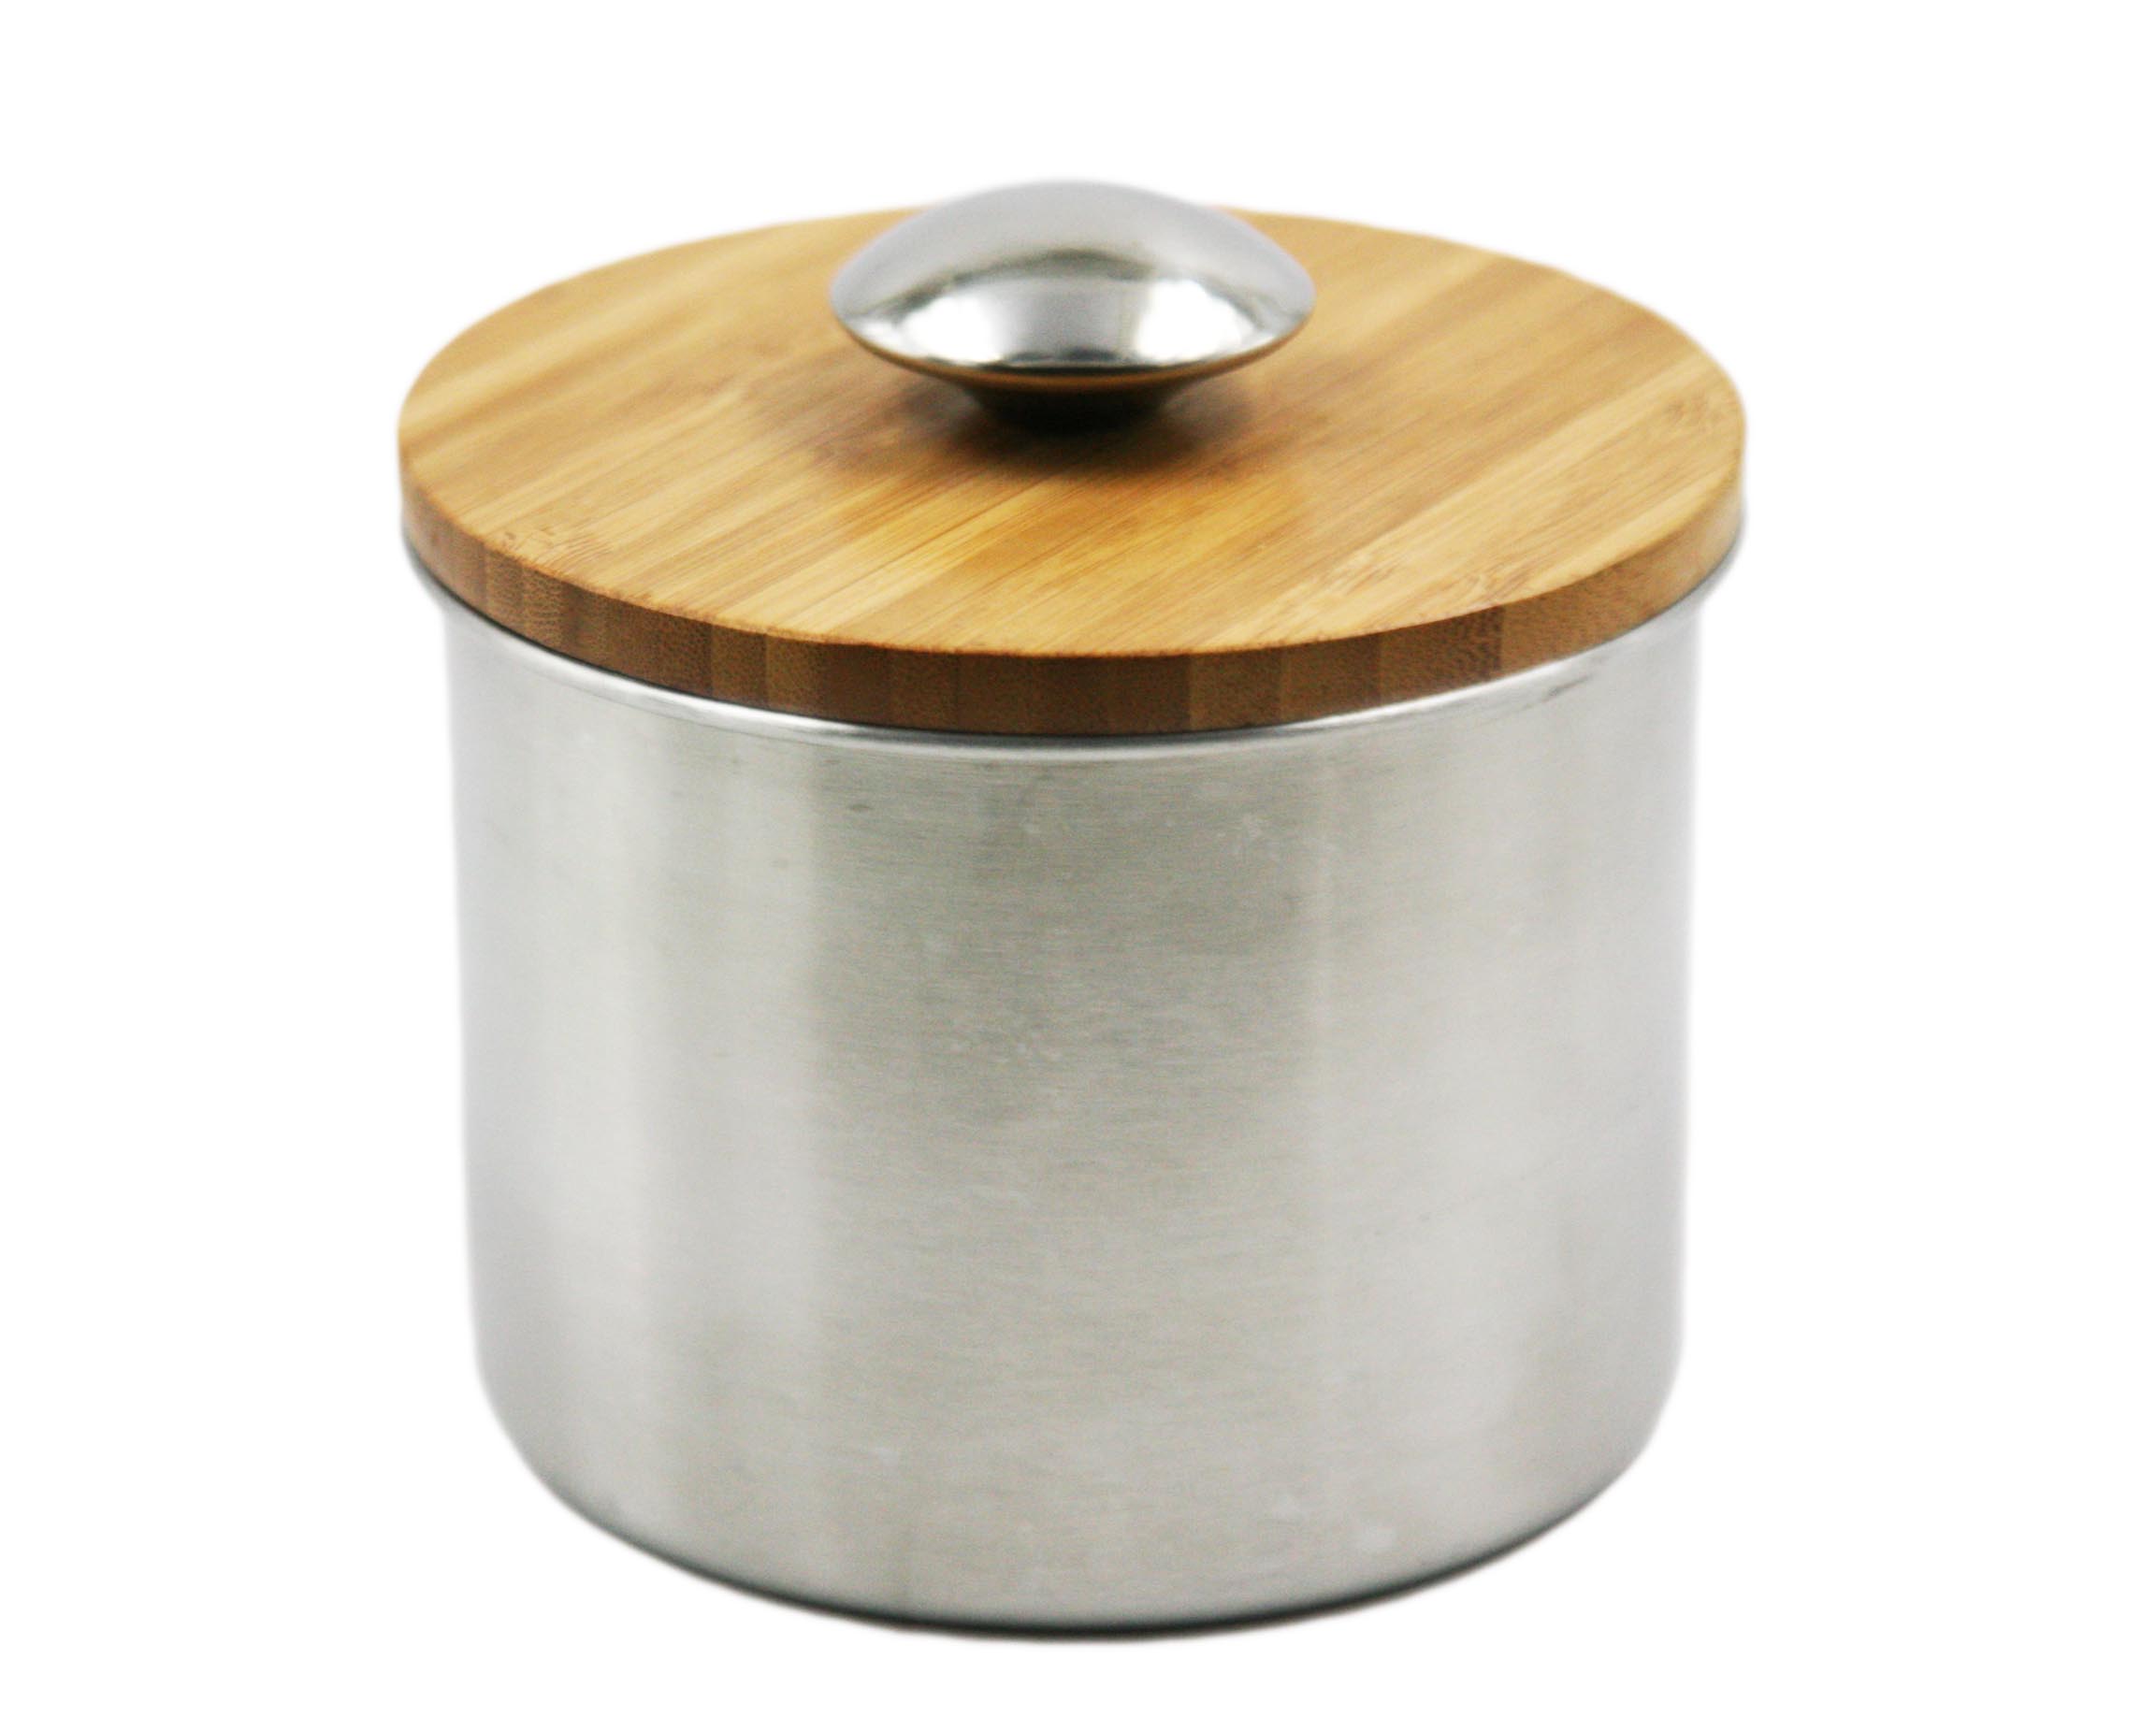 De gama alta de acero inoxidable de almacenamiento Pot / Can / tarro con tapa de madera EB-MF022